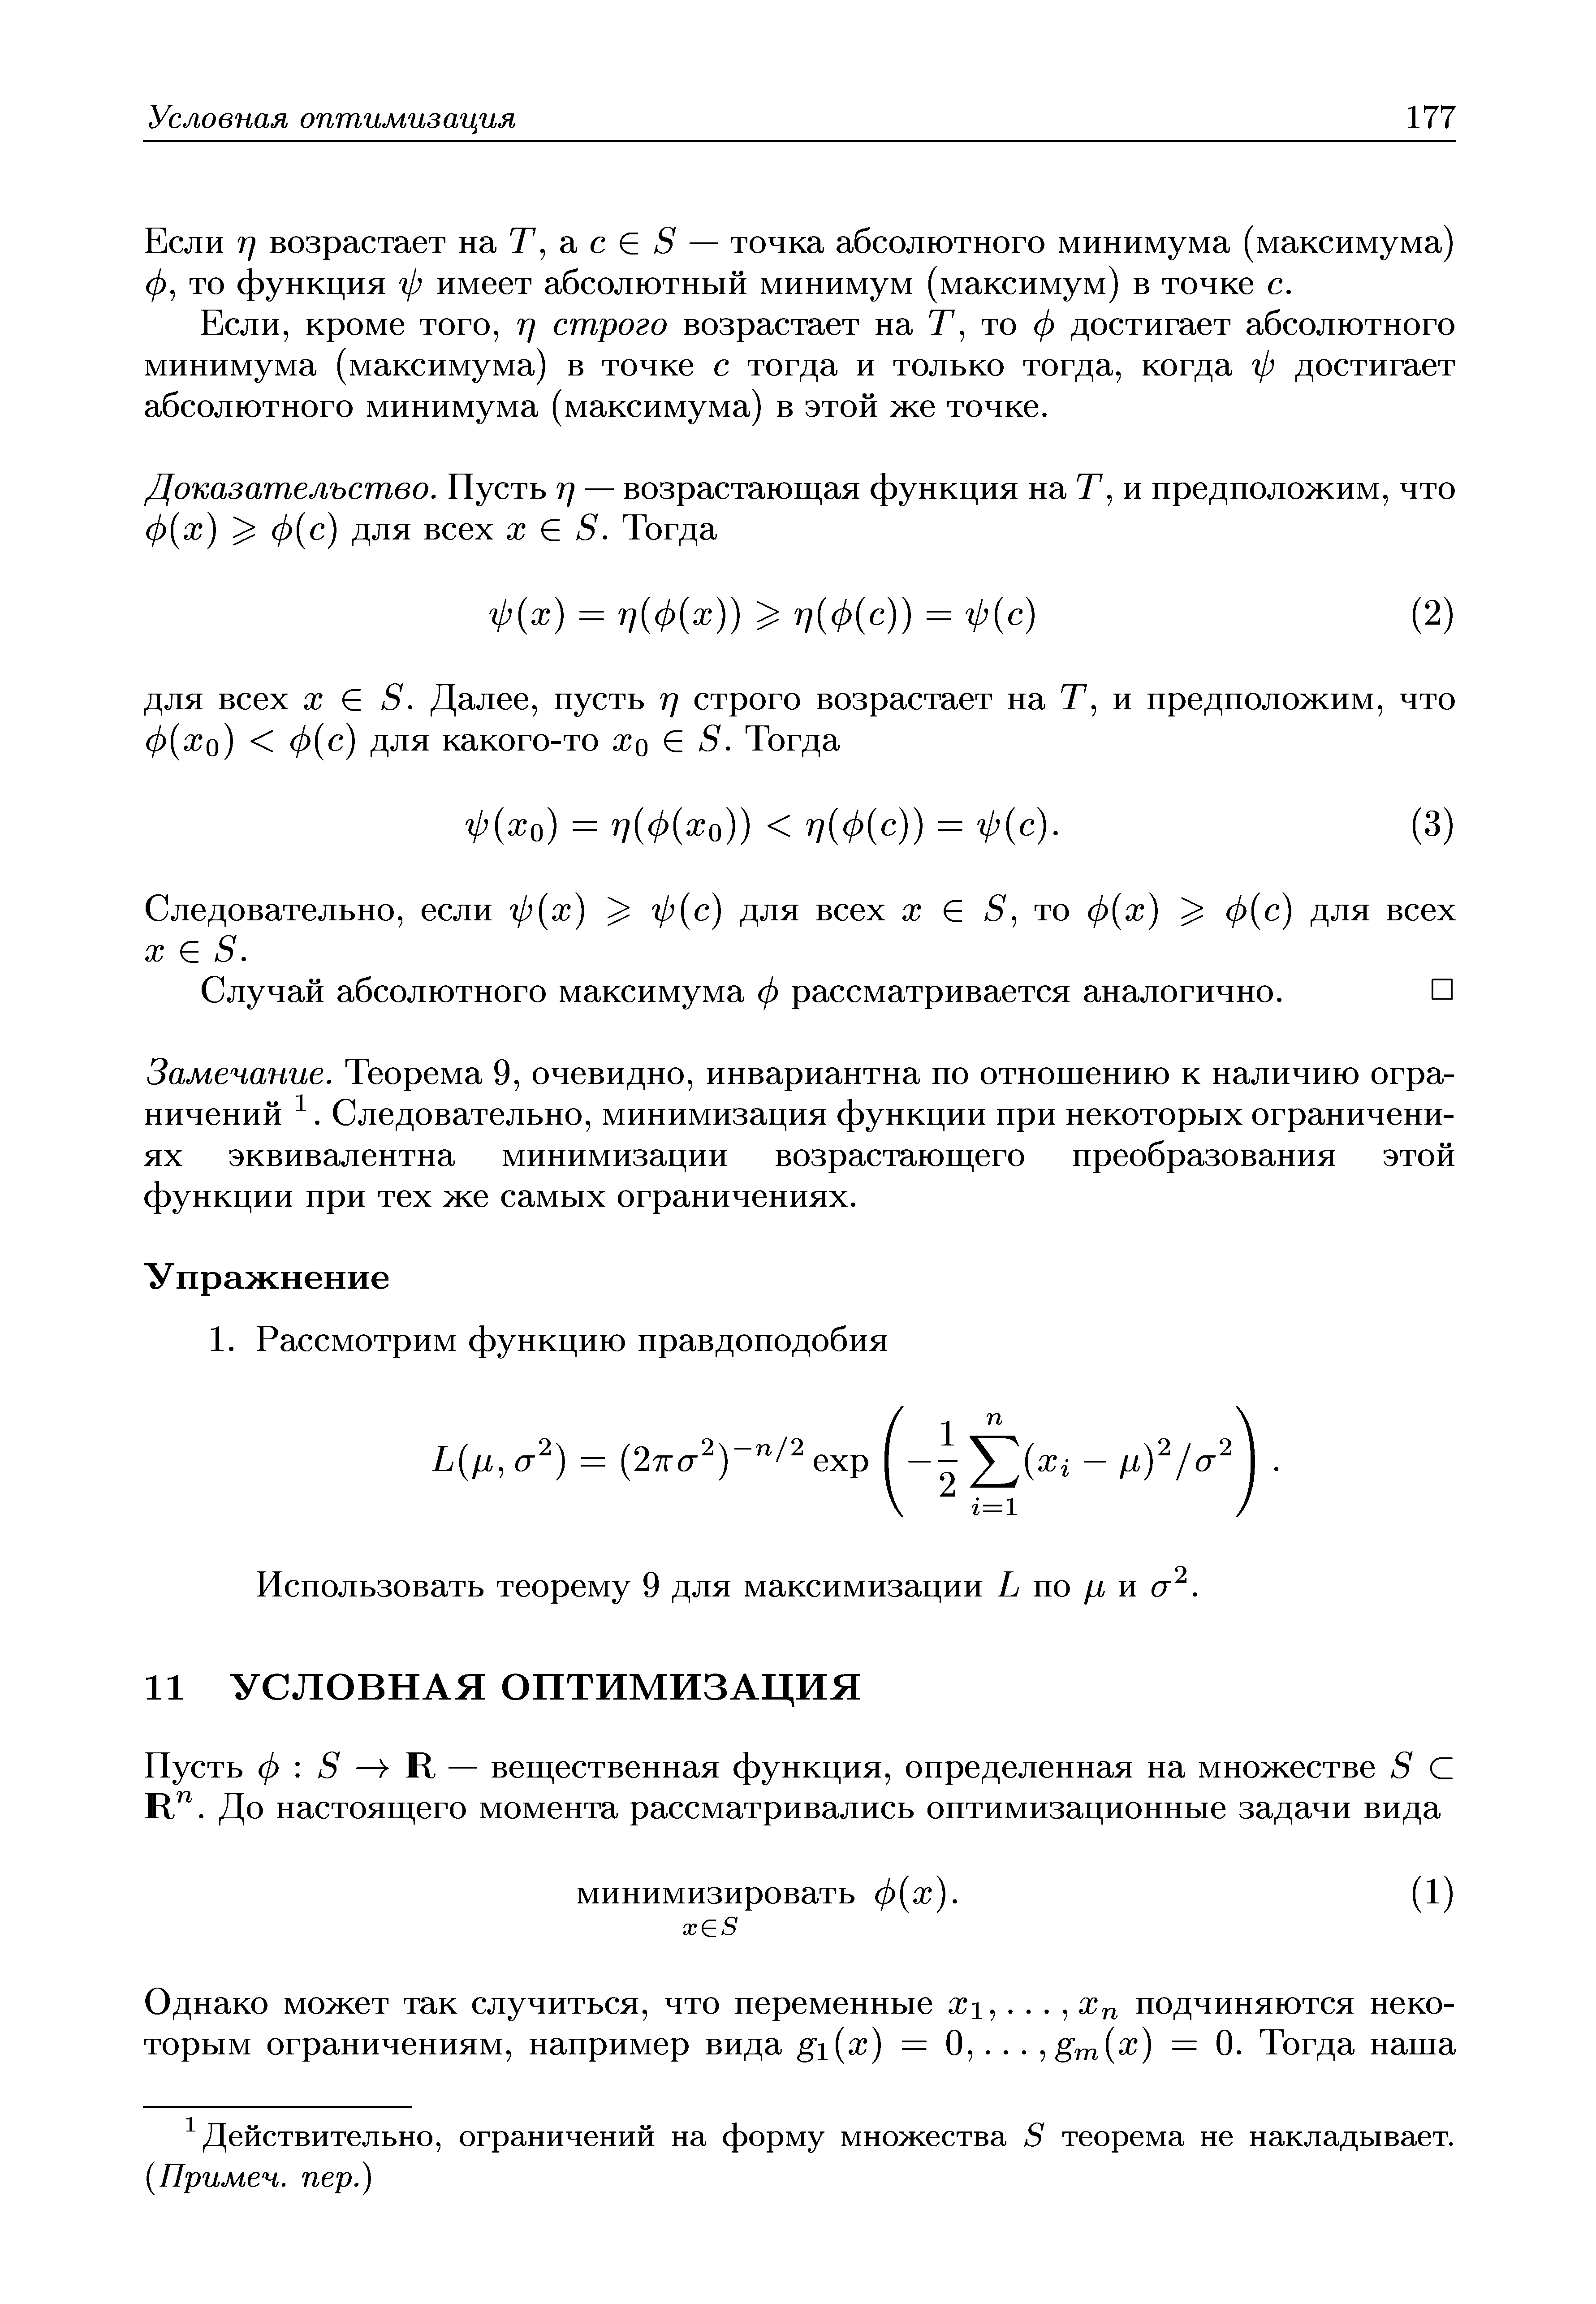 Если TJ возрастает на Т, а с S — точка абсолютного минимума (максимума) 0, то функция ф имеет абсолютный минимум (максимум) в точке с.
